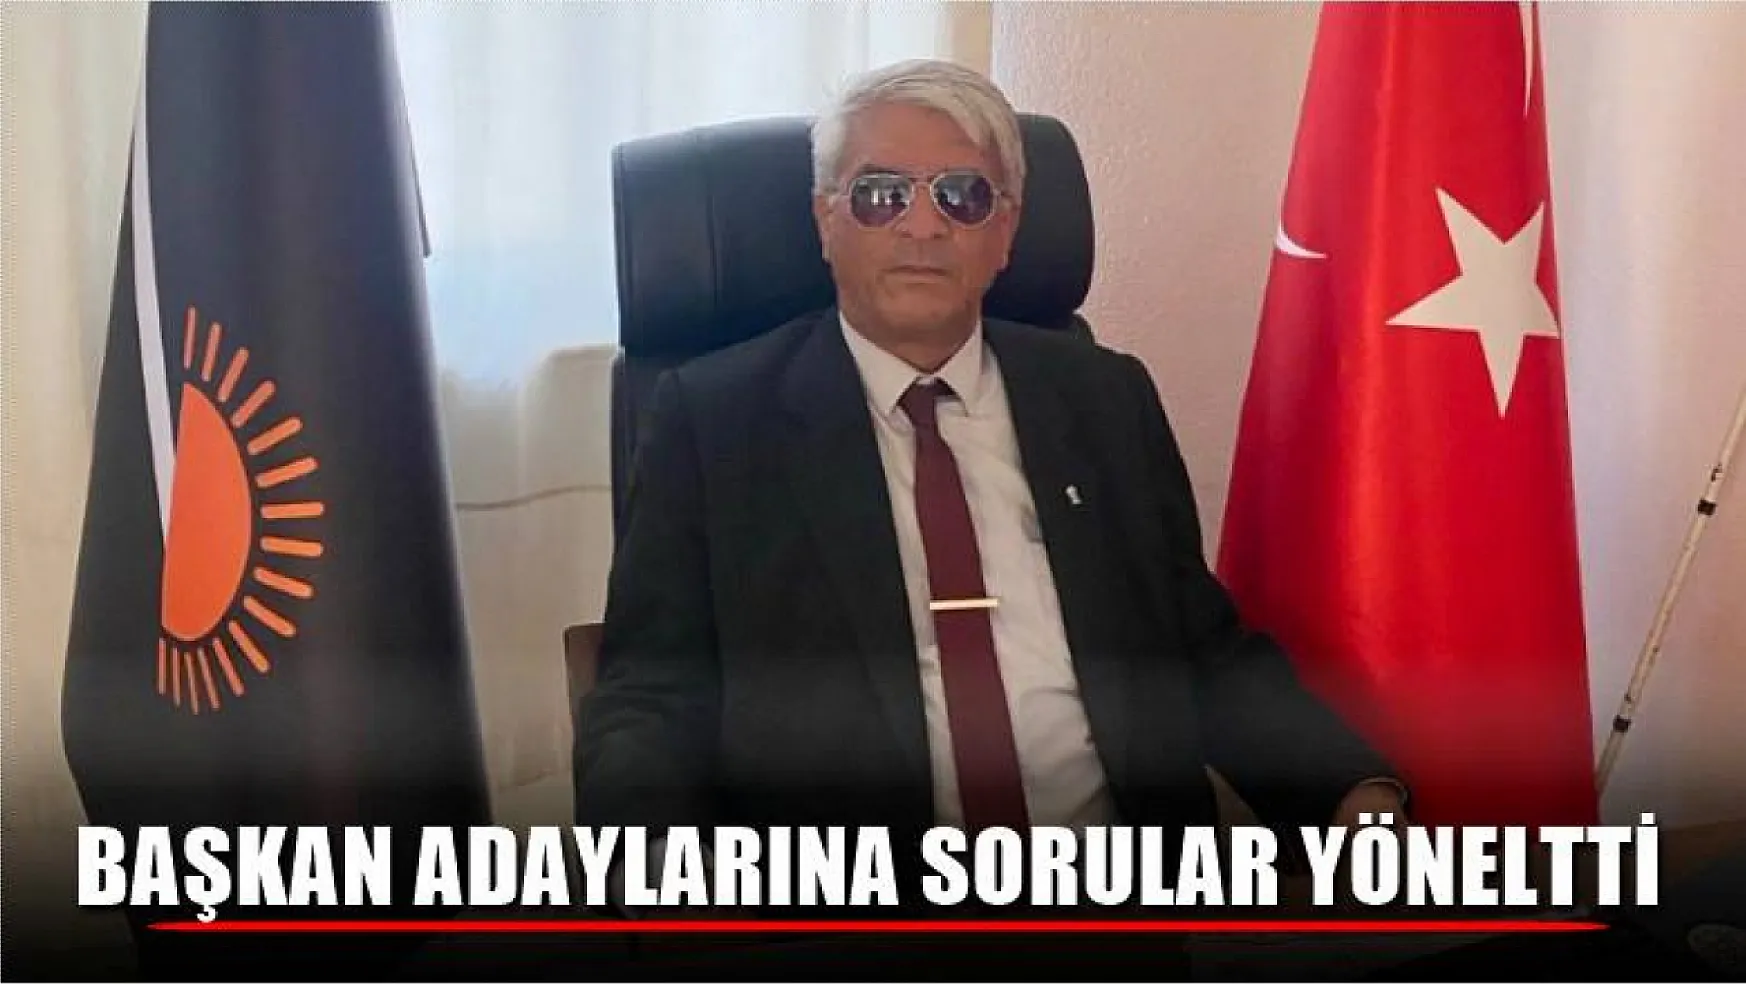 Şube Sekreteri Özdemir, Başkan Adaylarına Sorular Yöneltti